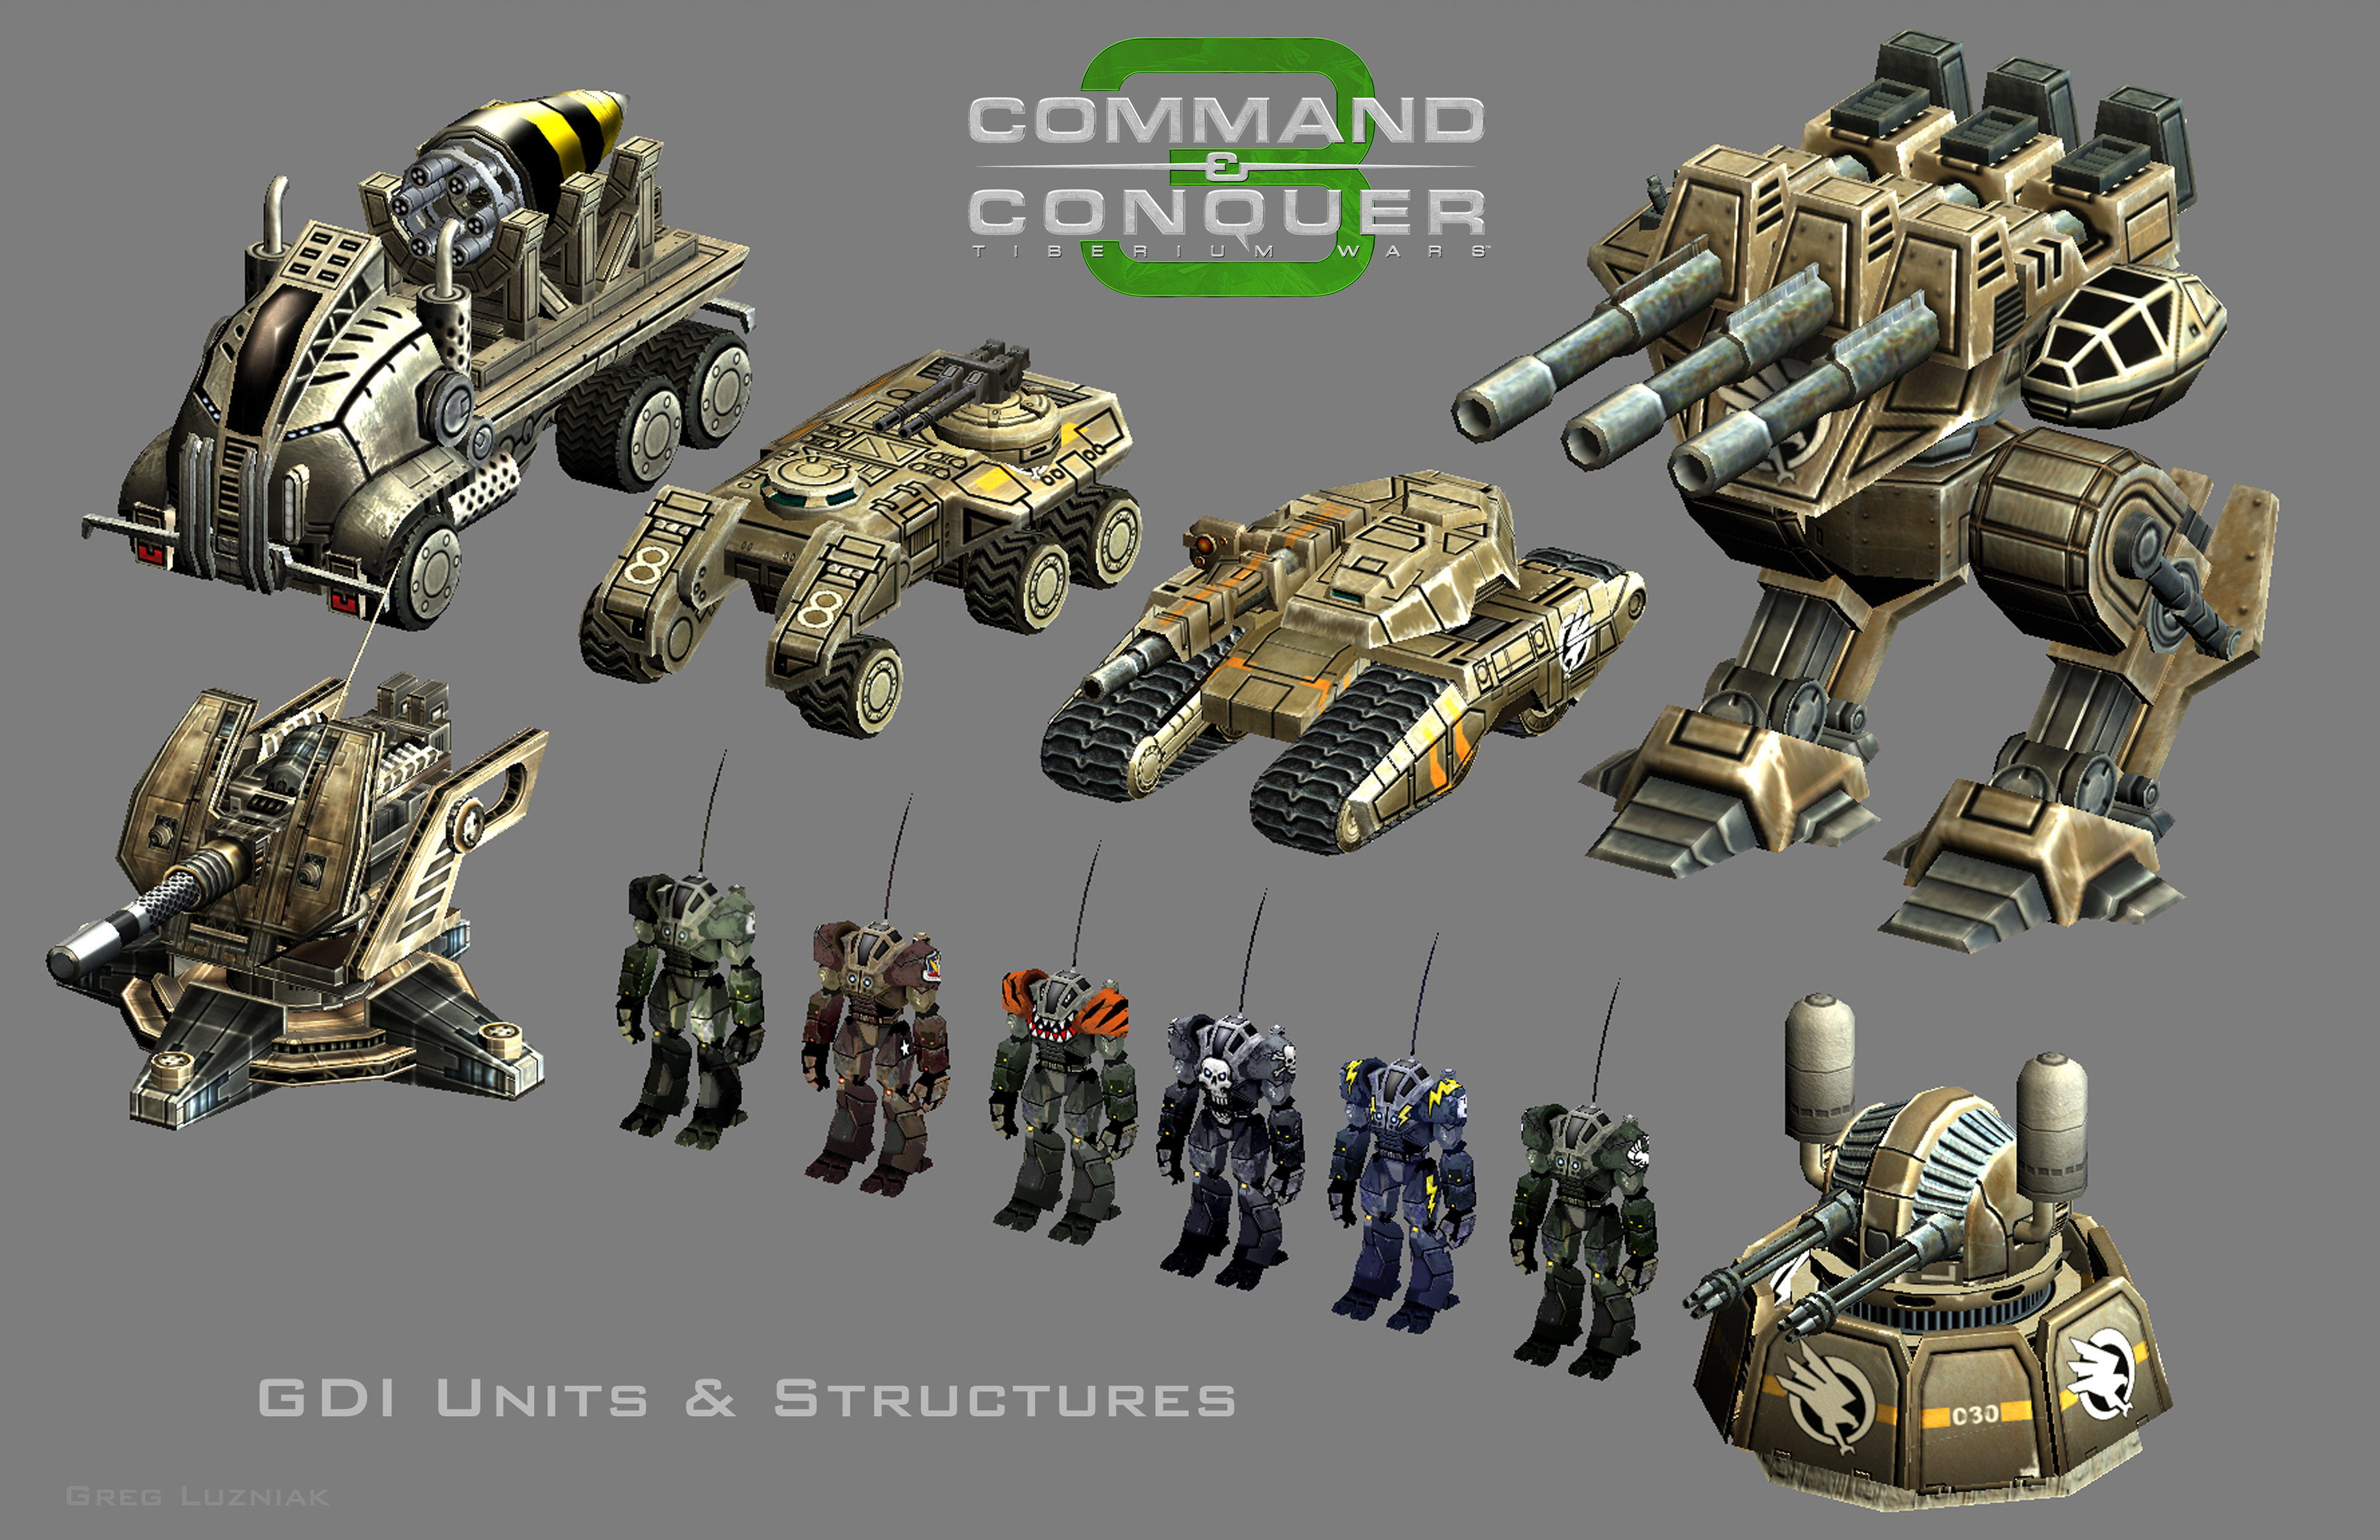 Крутые юниты. C C 3 Tiberium Wars юниты. Tiberium Wars 4 юниты. Command & Conquer 3 юниты ГСБ. Тибериум ВАРС 3 техника НОД.